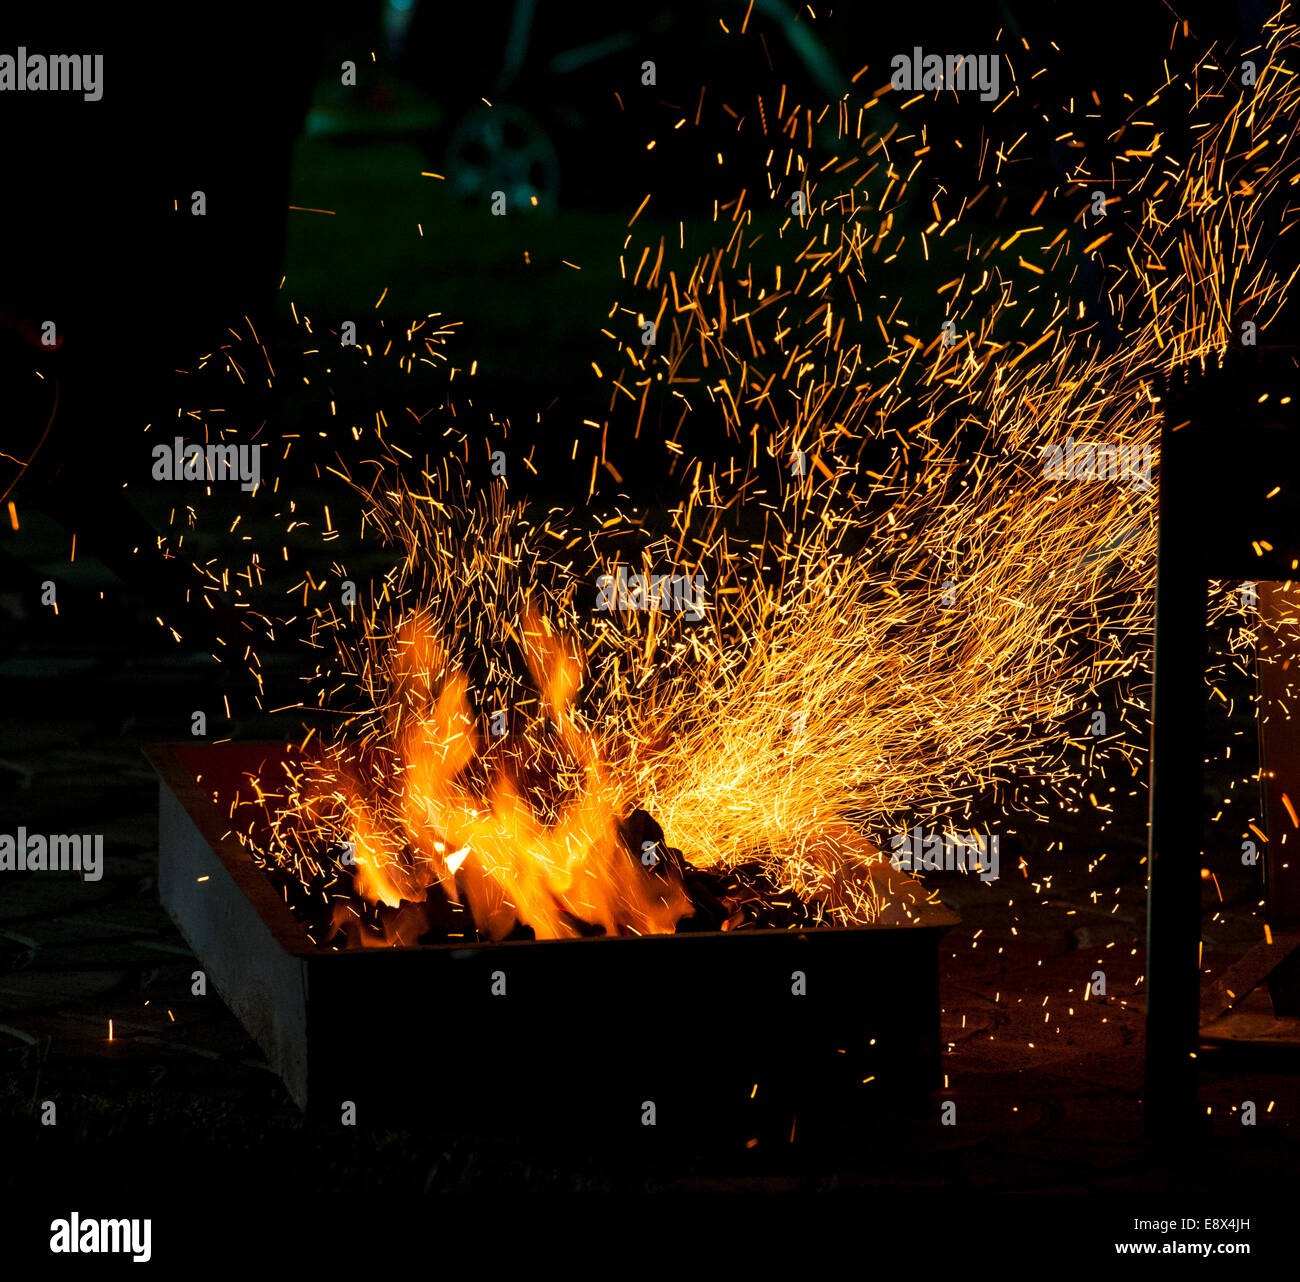 Piccolo barbecue sul fuoco con la combustione di carbonella e scintille volanti Foto Stock